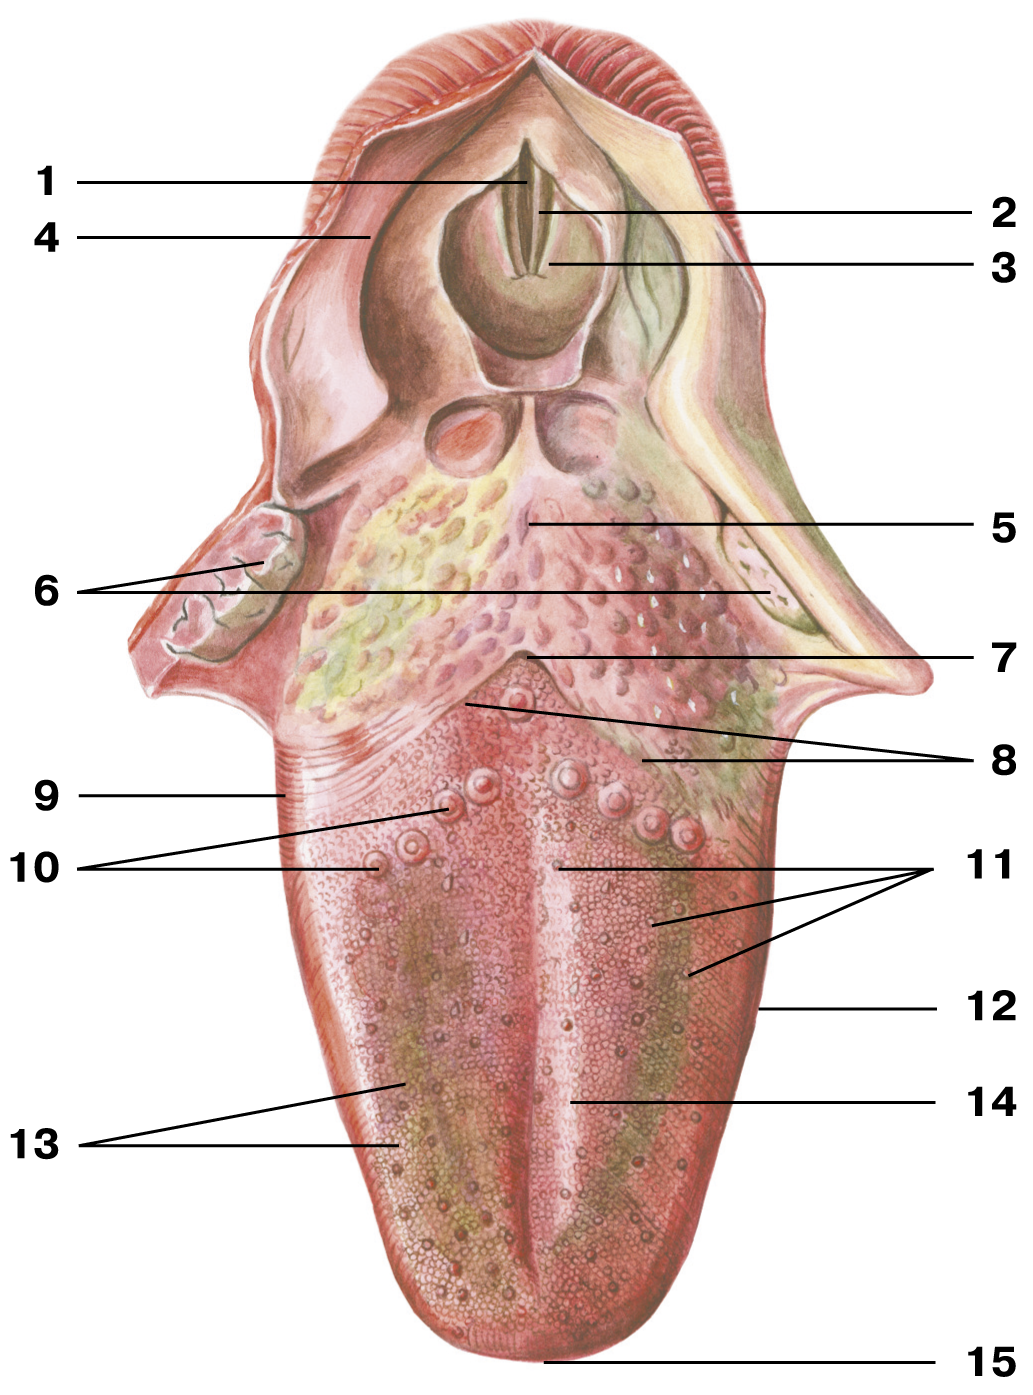 Язык ротовой полости. Желобовидные сосочки корня языка. Язычная миндалина анатомия. Грибовидные сосочки языка анатомия. Черпалонадгортанная складка анатомия.